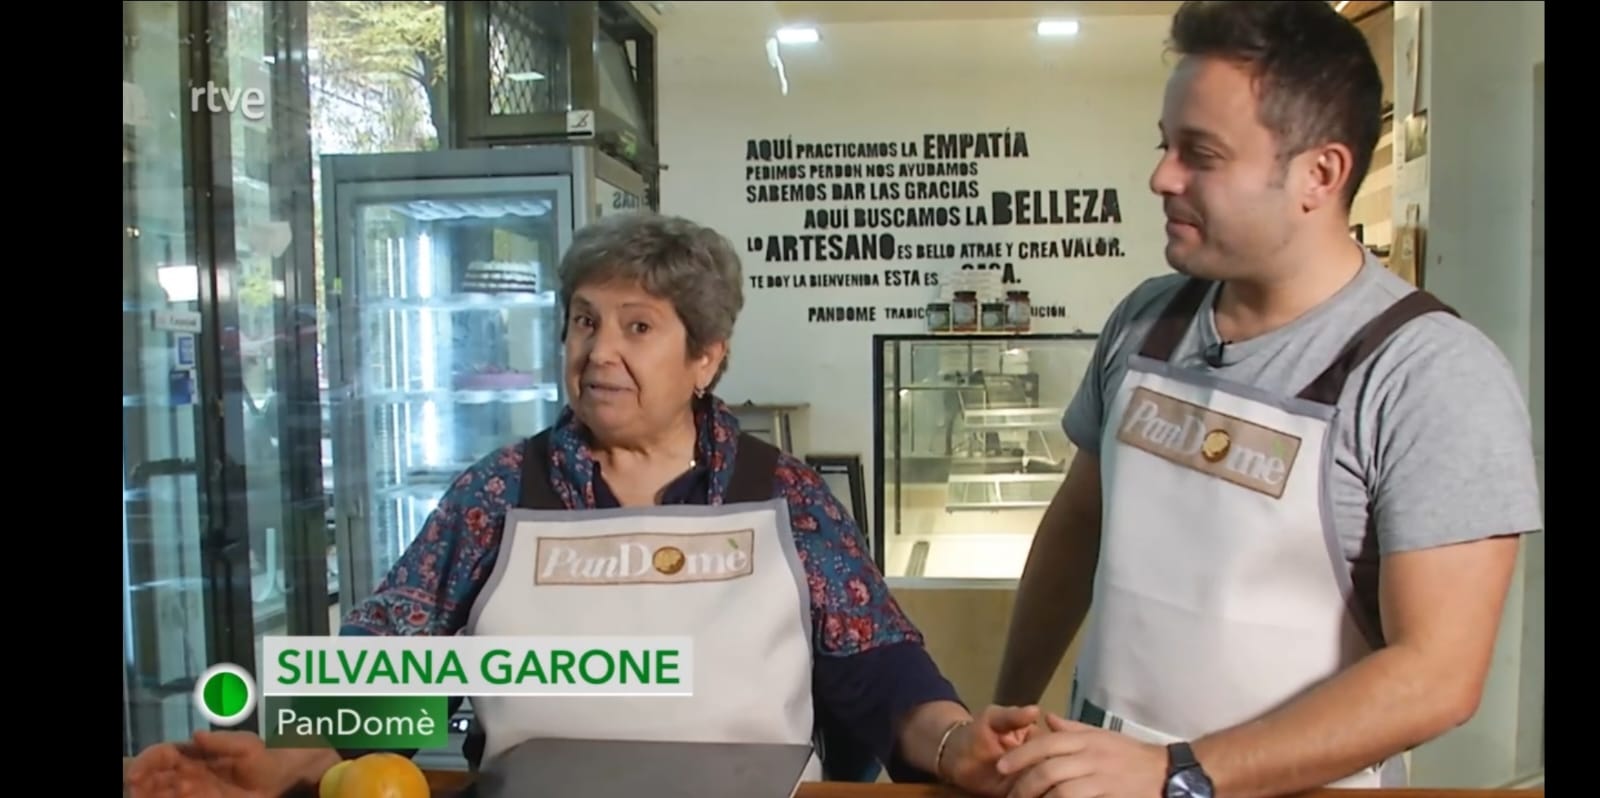 Domenico Rosso y su madre Silvana di Buonabitacolo llegan al programa de cocina española ‘Aquì la Tierra’.